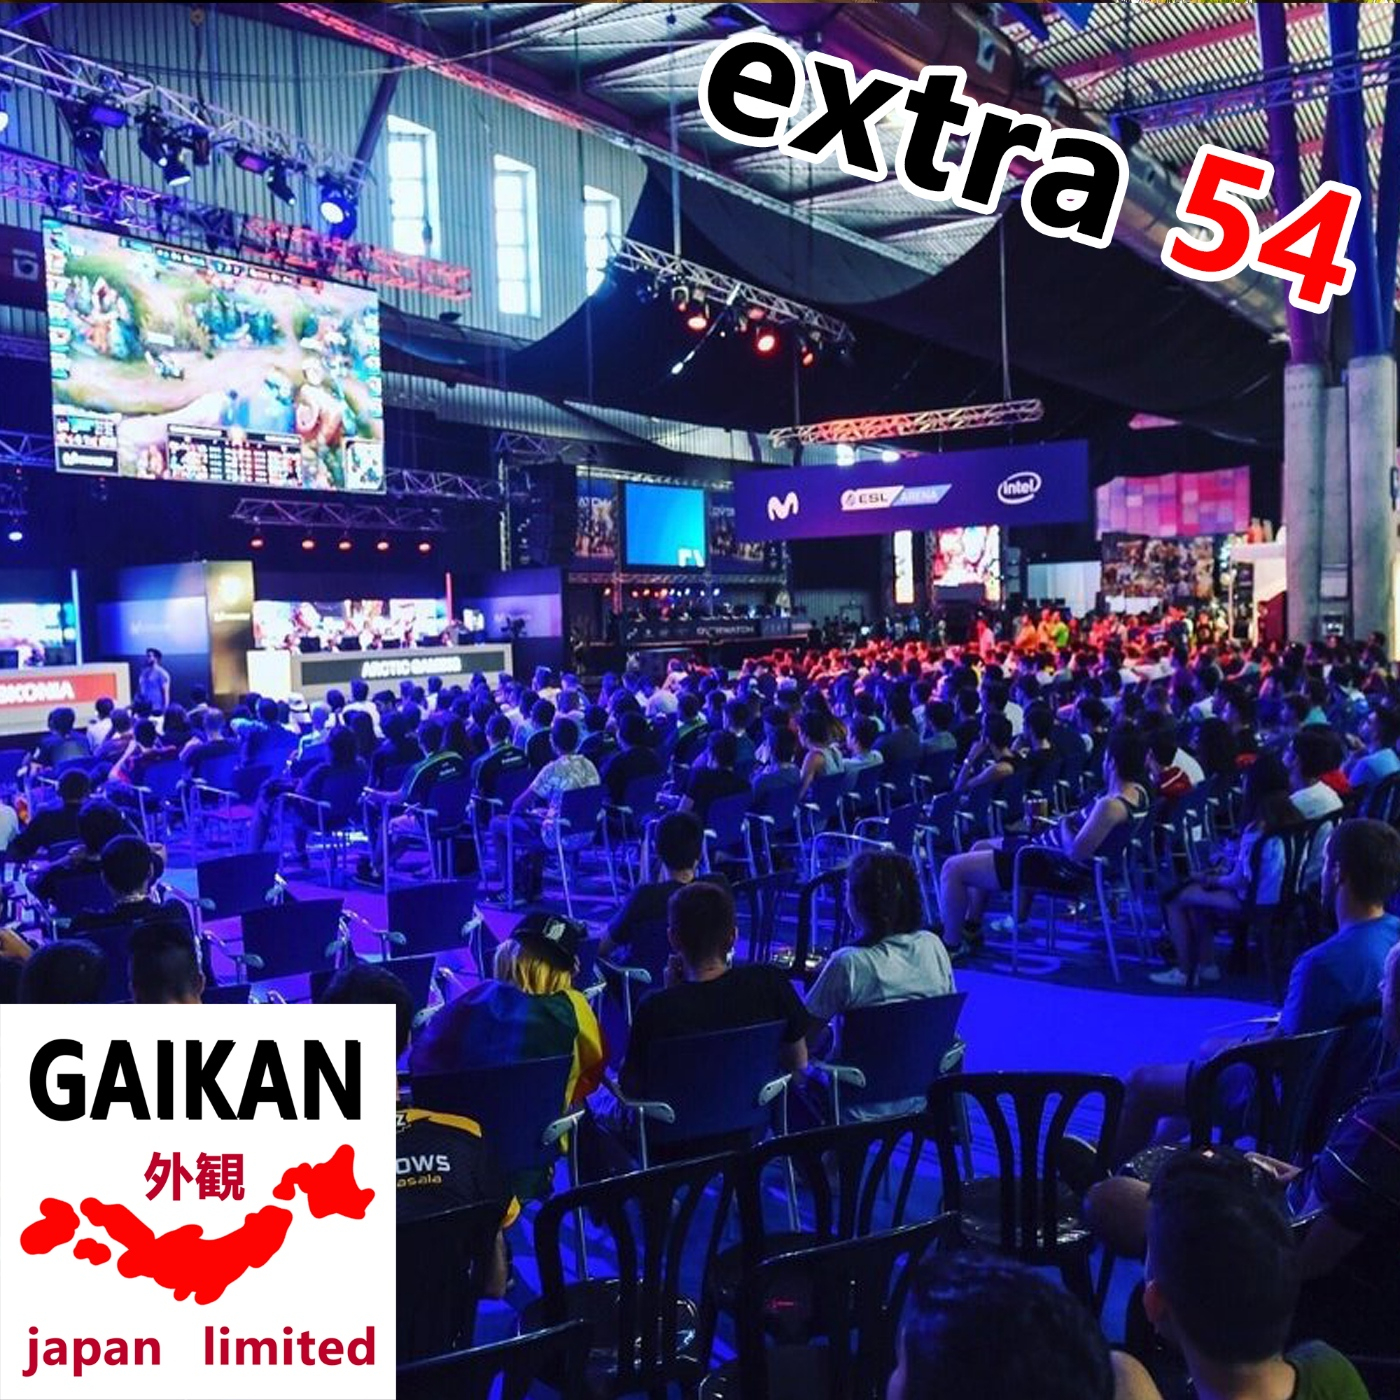 Extra 54 - Buscando Japón en Gamepolis y hablando de merchandising y comida nipona - Episodio exclusivo para mecenas